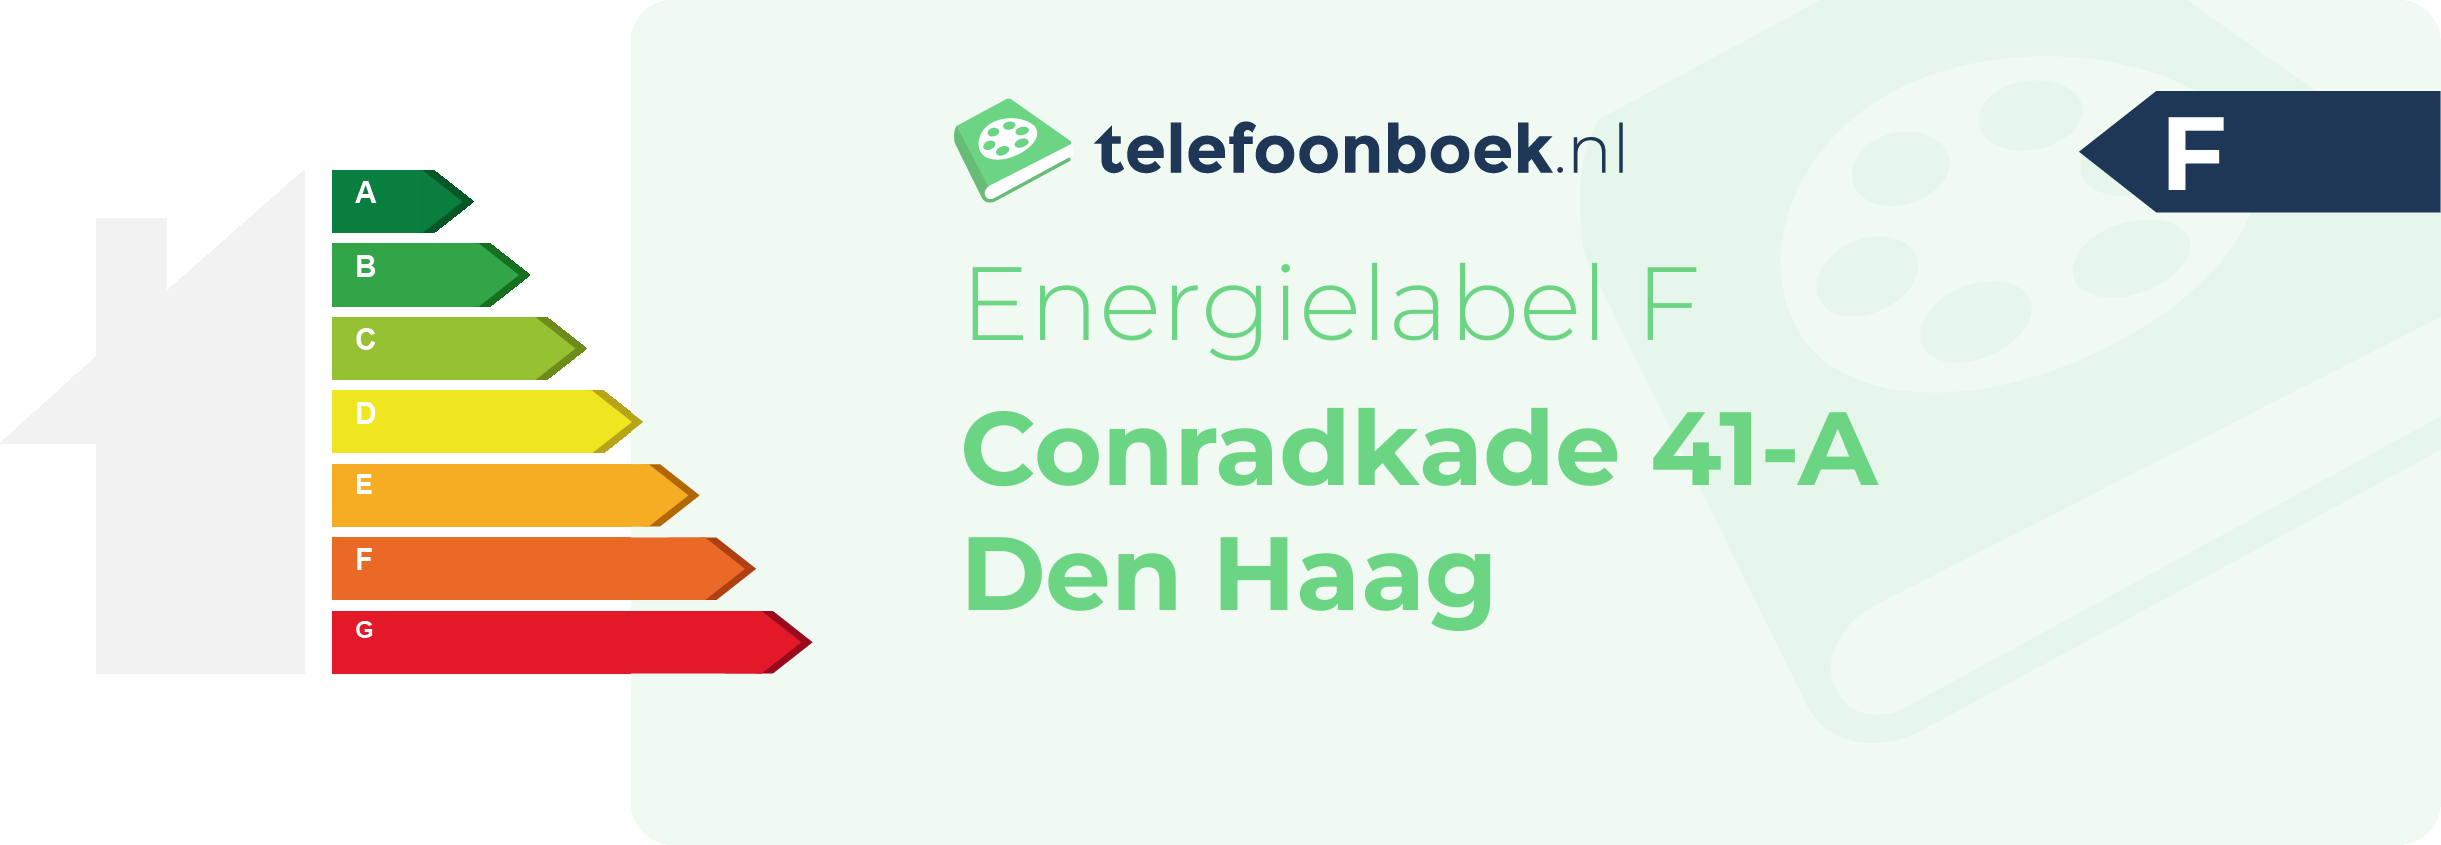 Energielabel Conradkade 41-A Den Haag